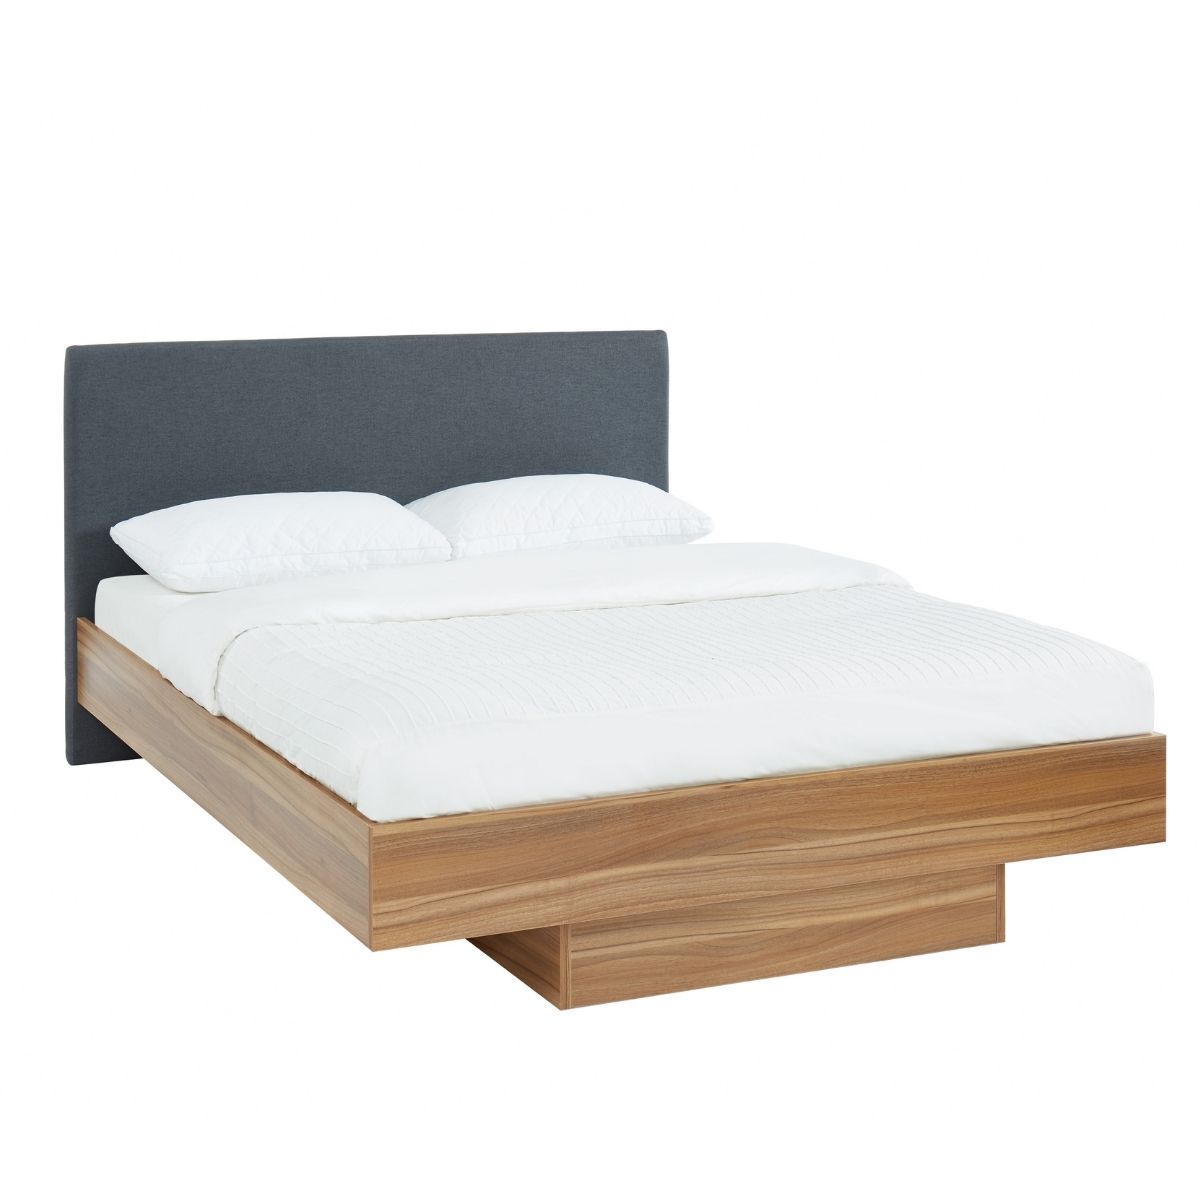 King Walnut Oak Wood Floating Bed Frame